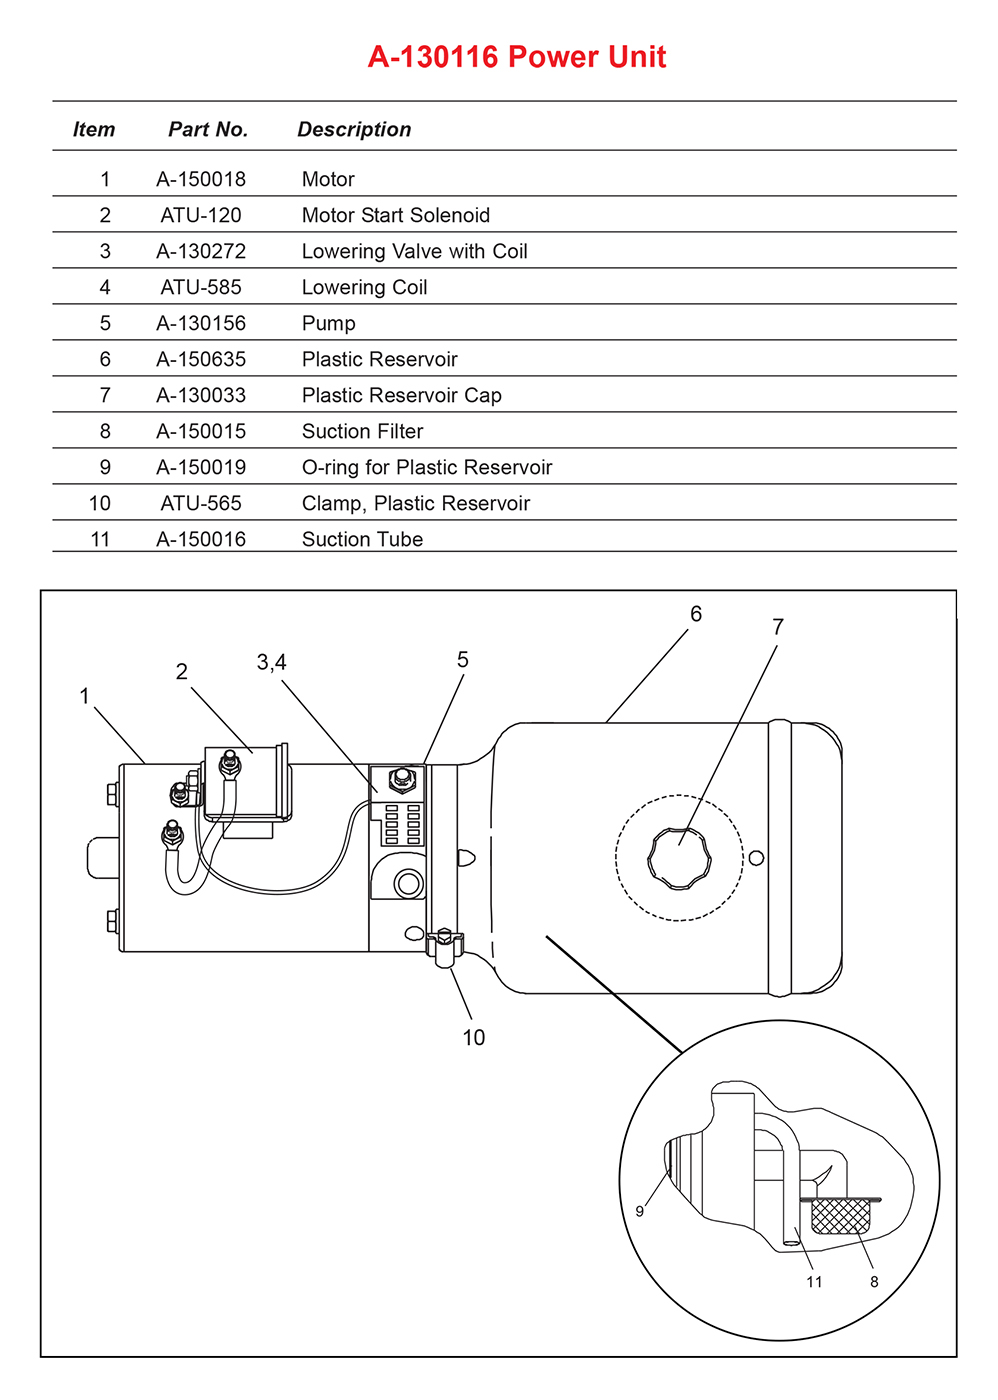 Anthony LA A-130116 Power Unit Diagram